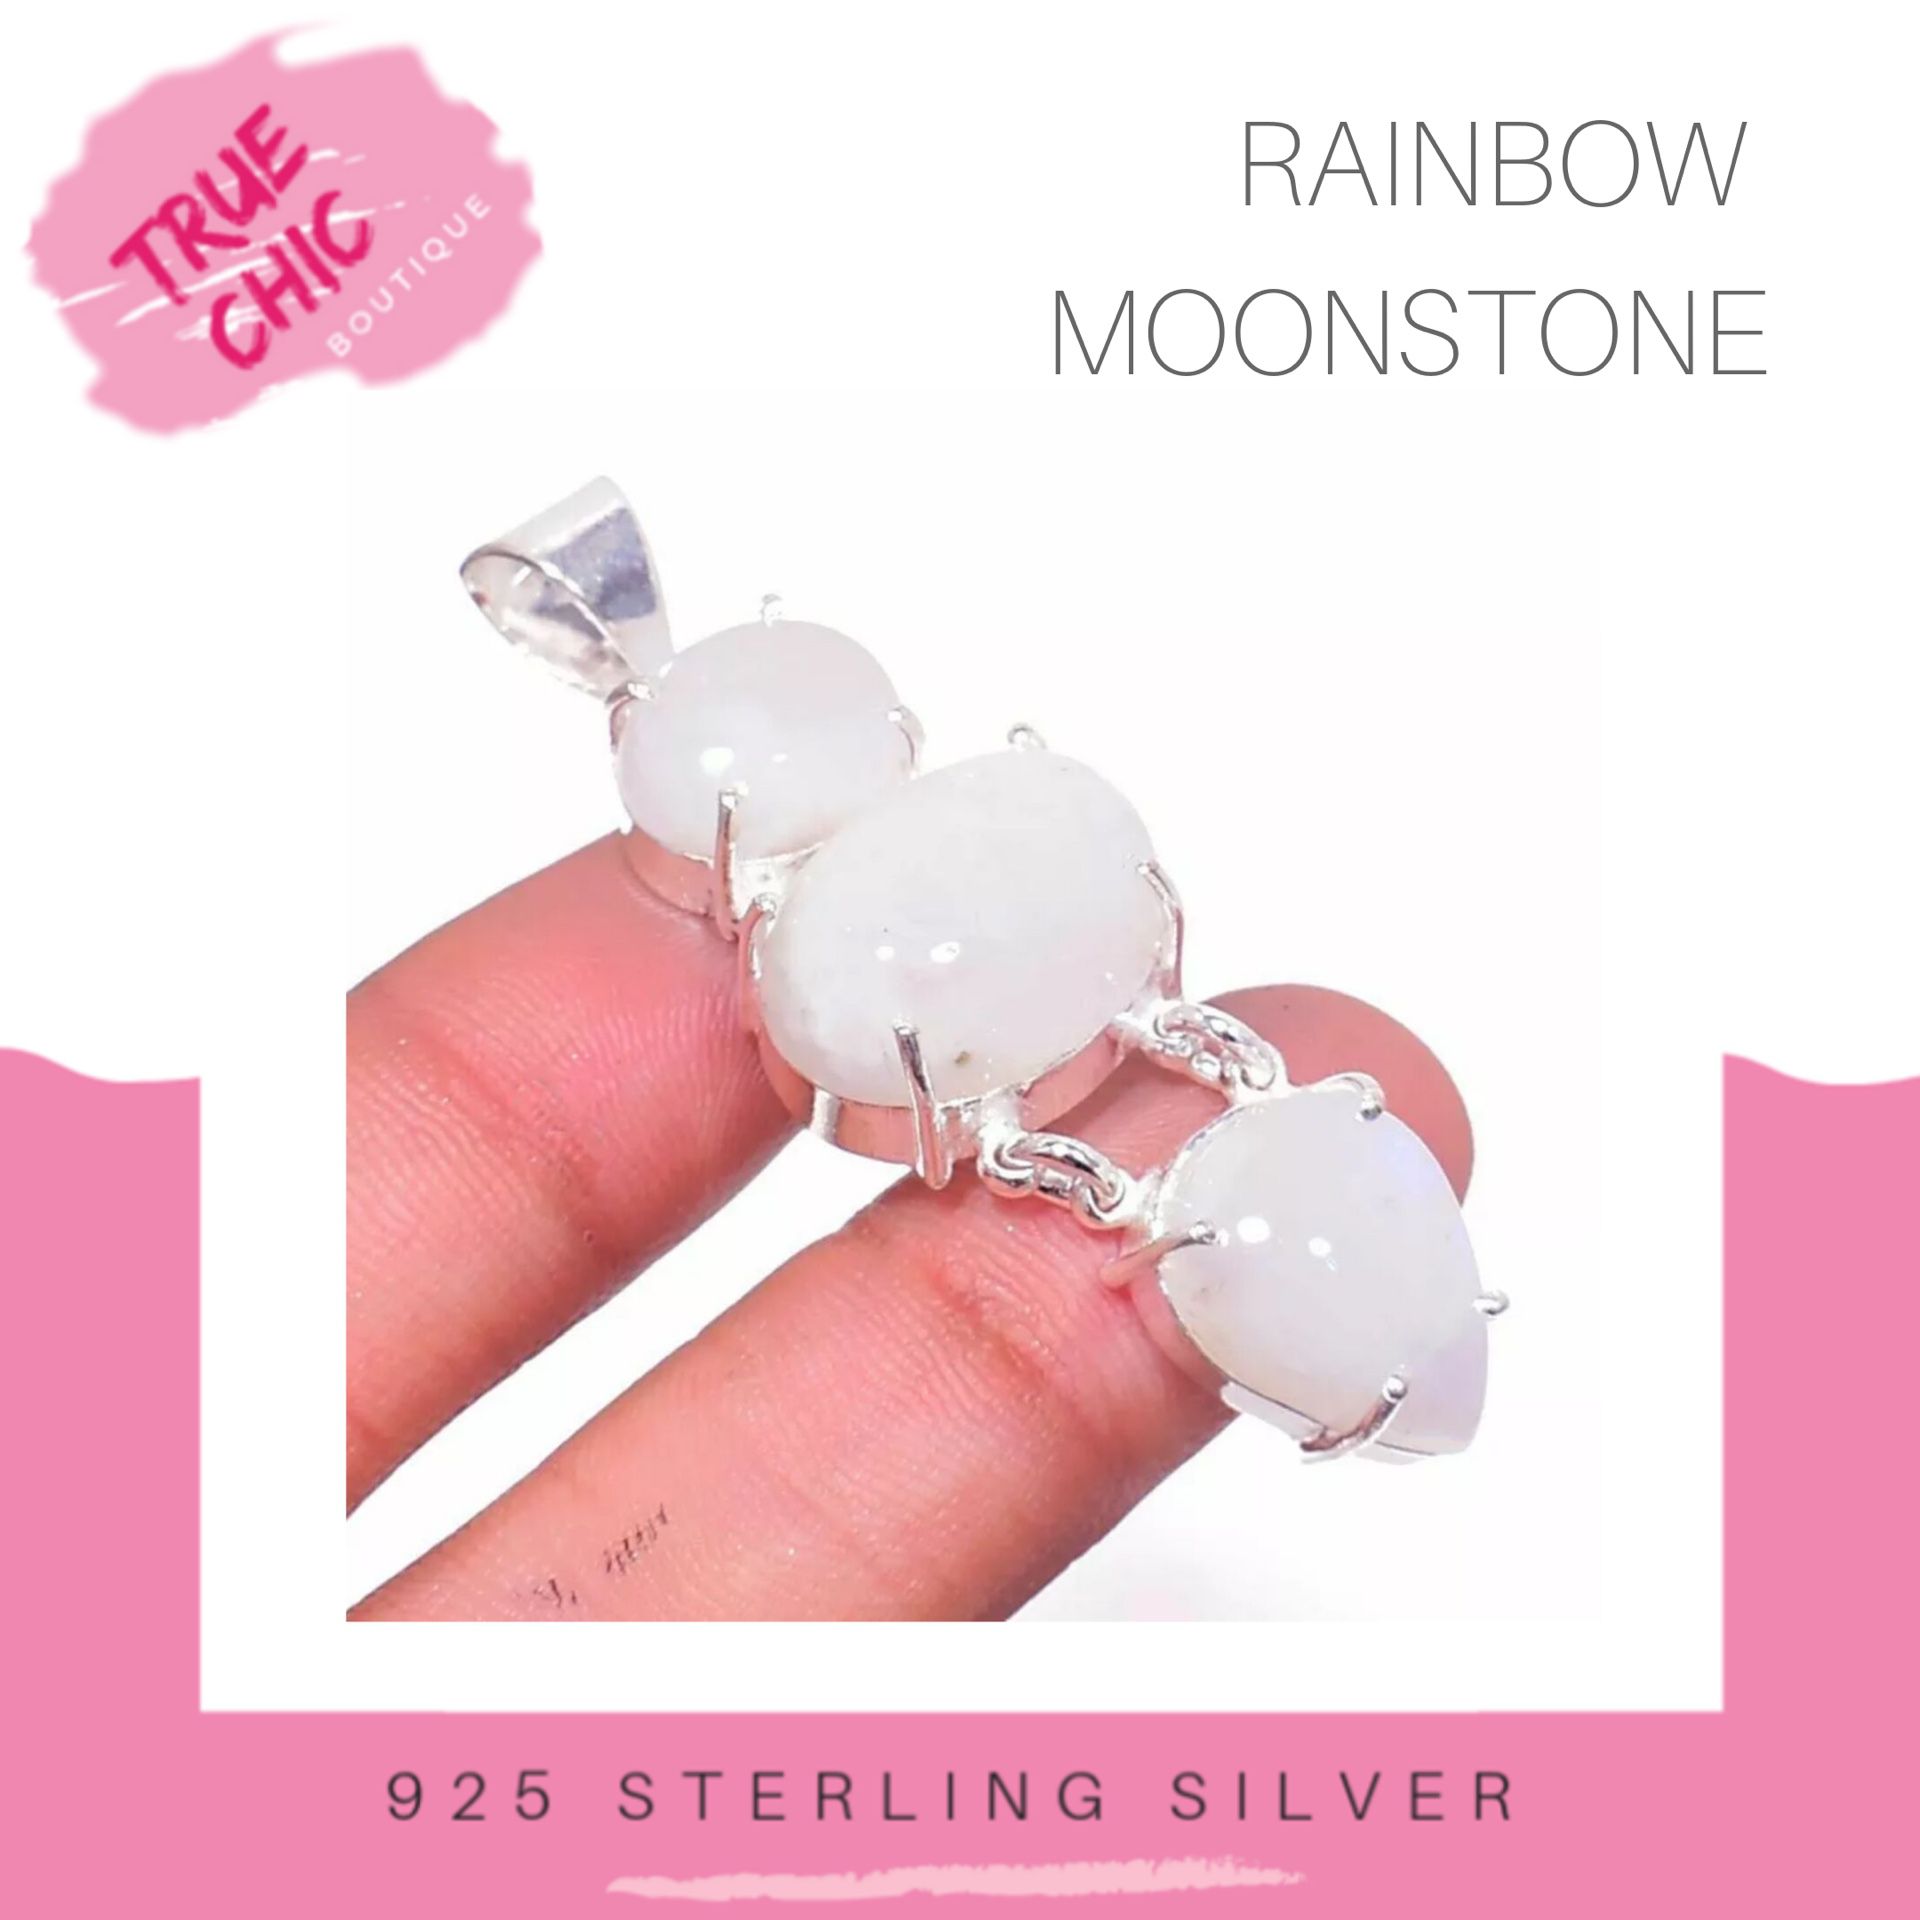 Rainbow Moonstone Pendant